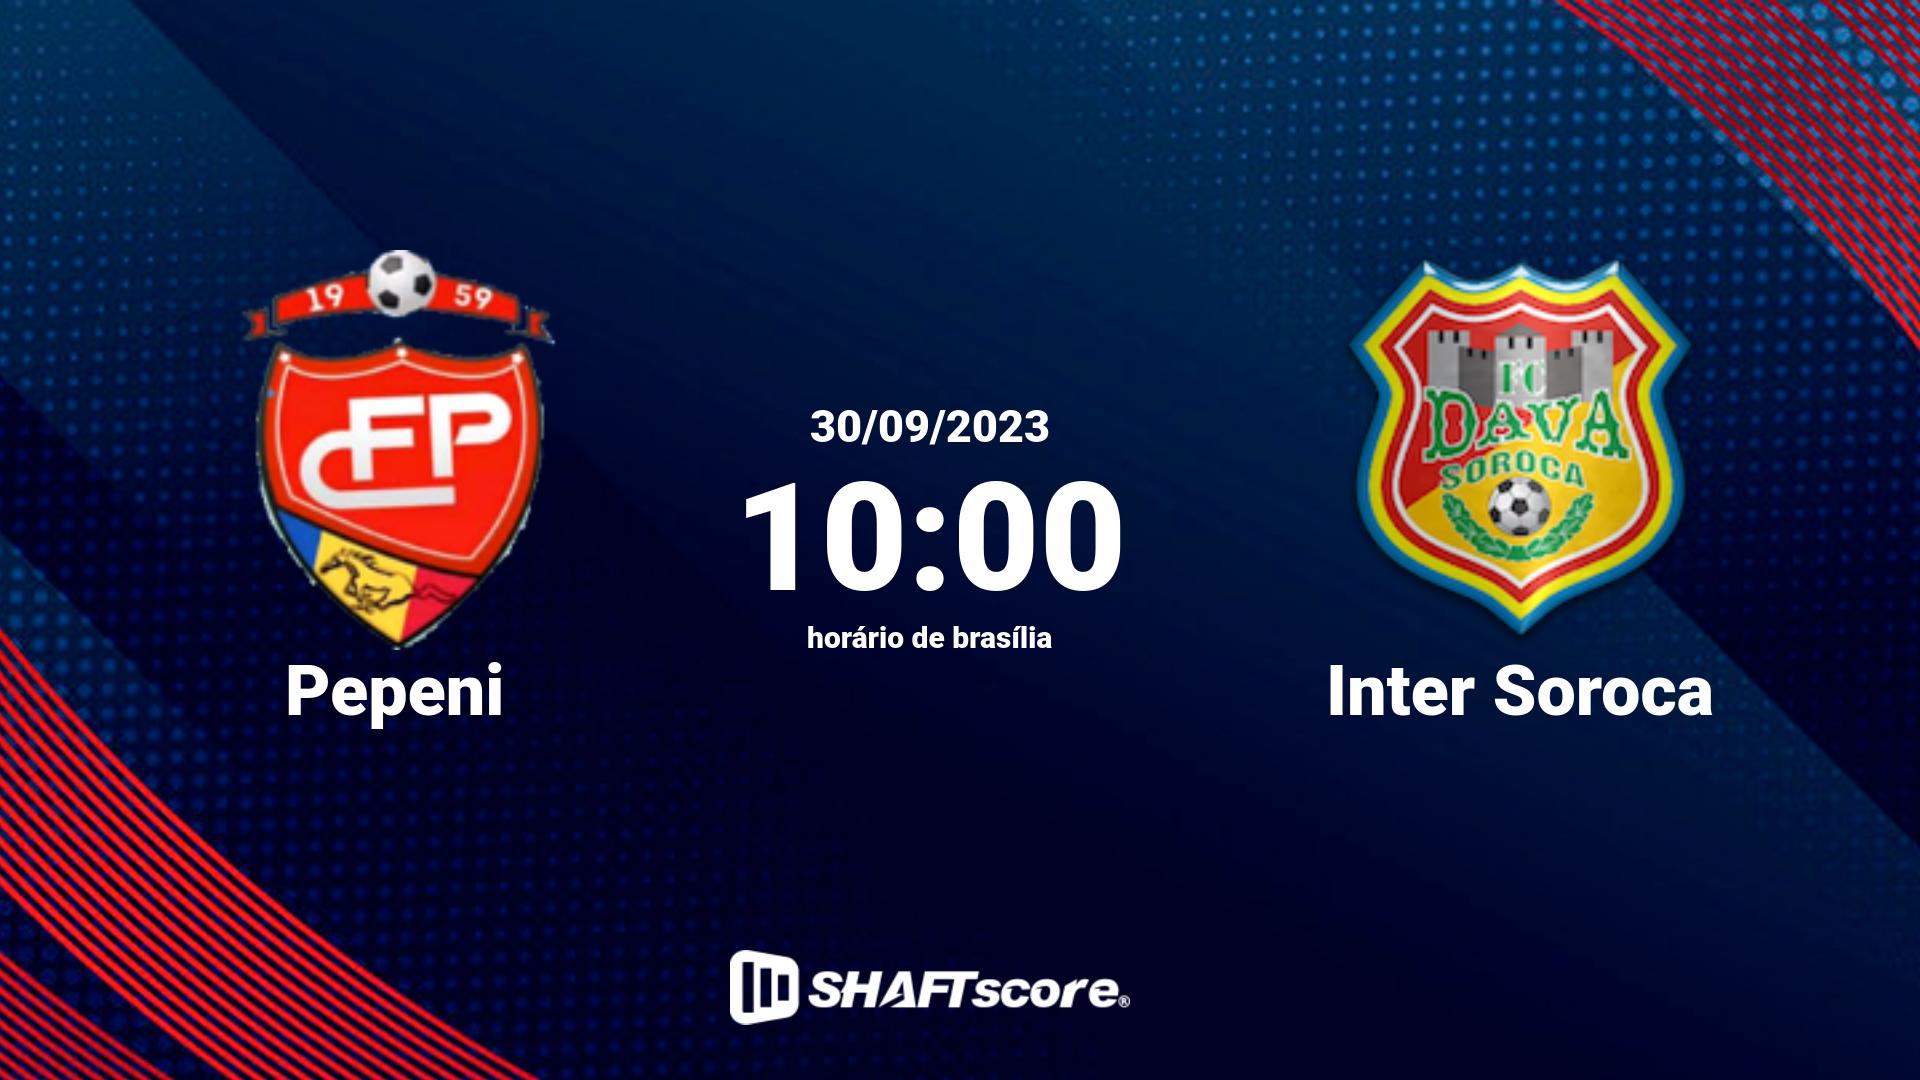 Estatísticas do jogo Pepeni vs Inter Soroca 30.09 10:00